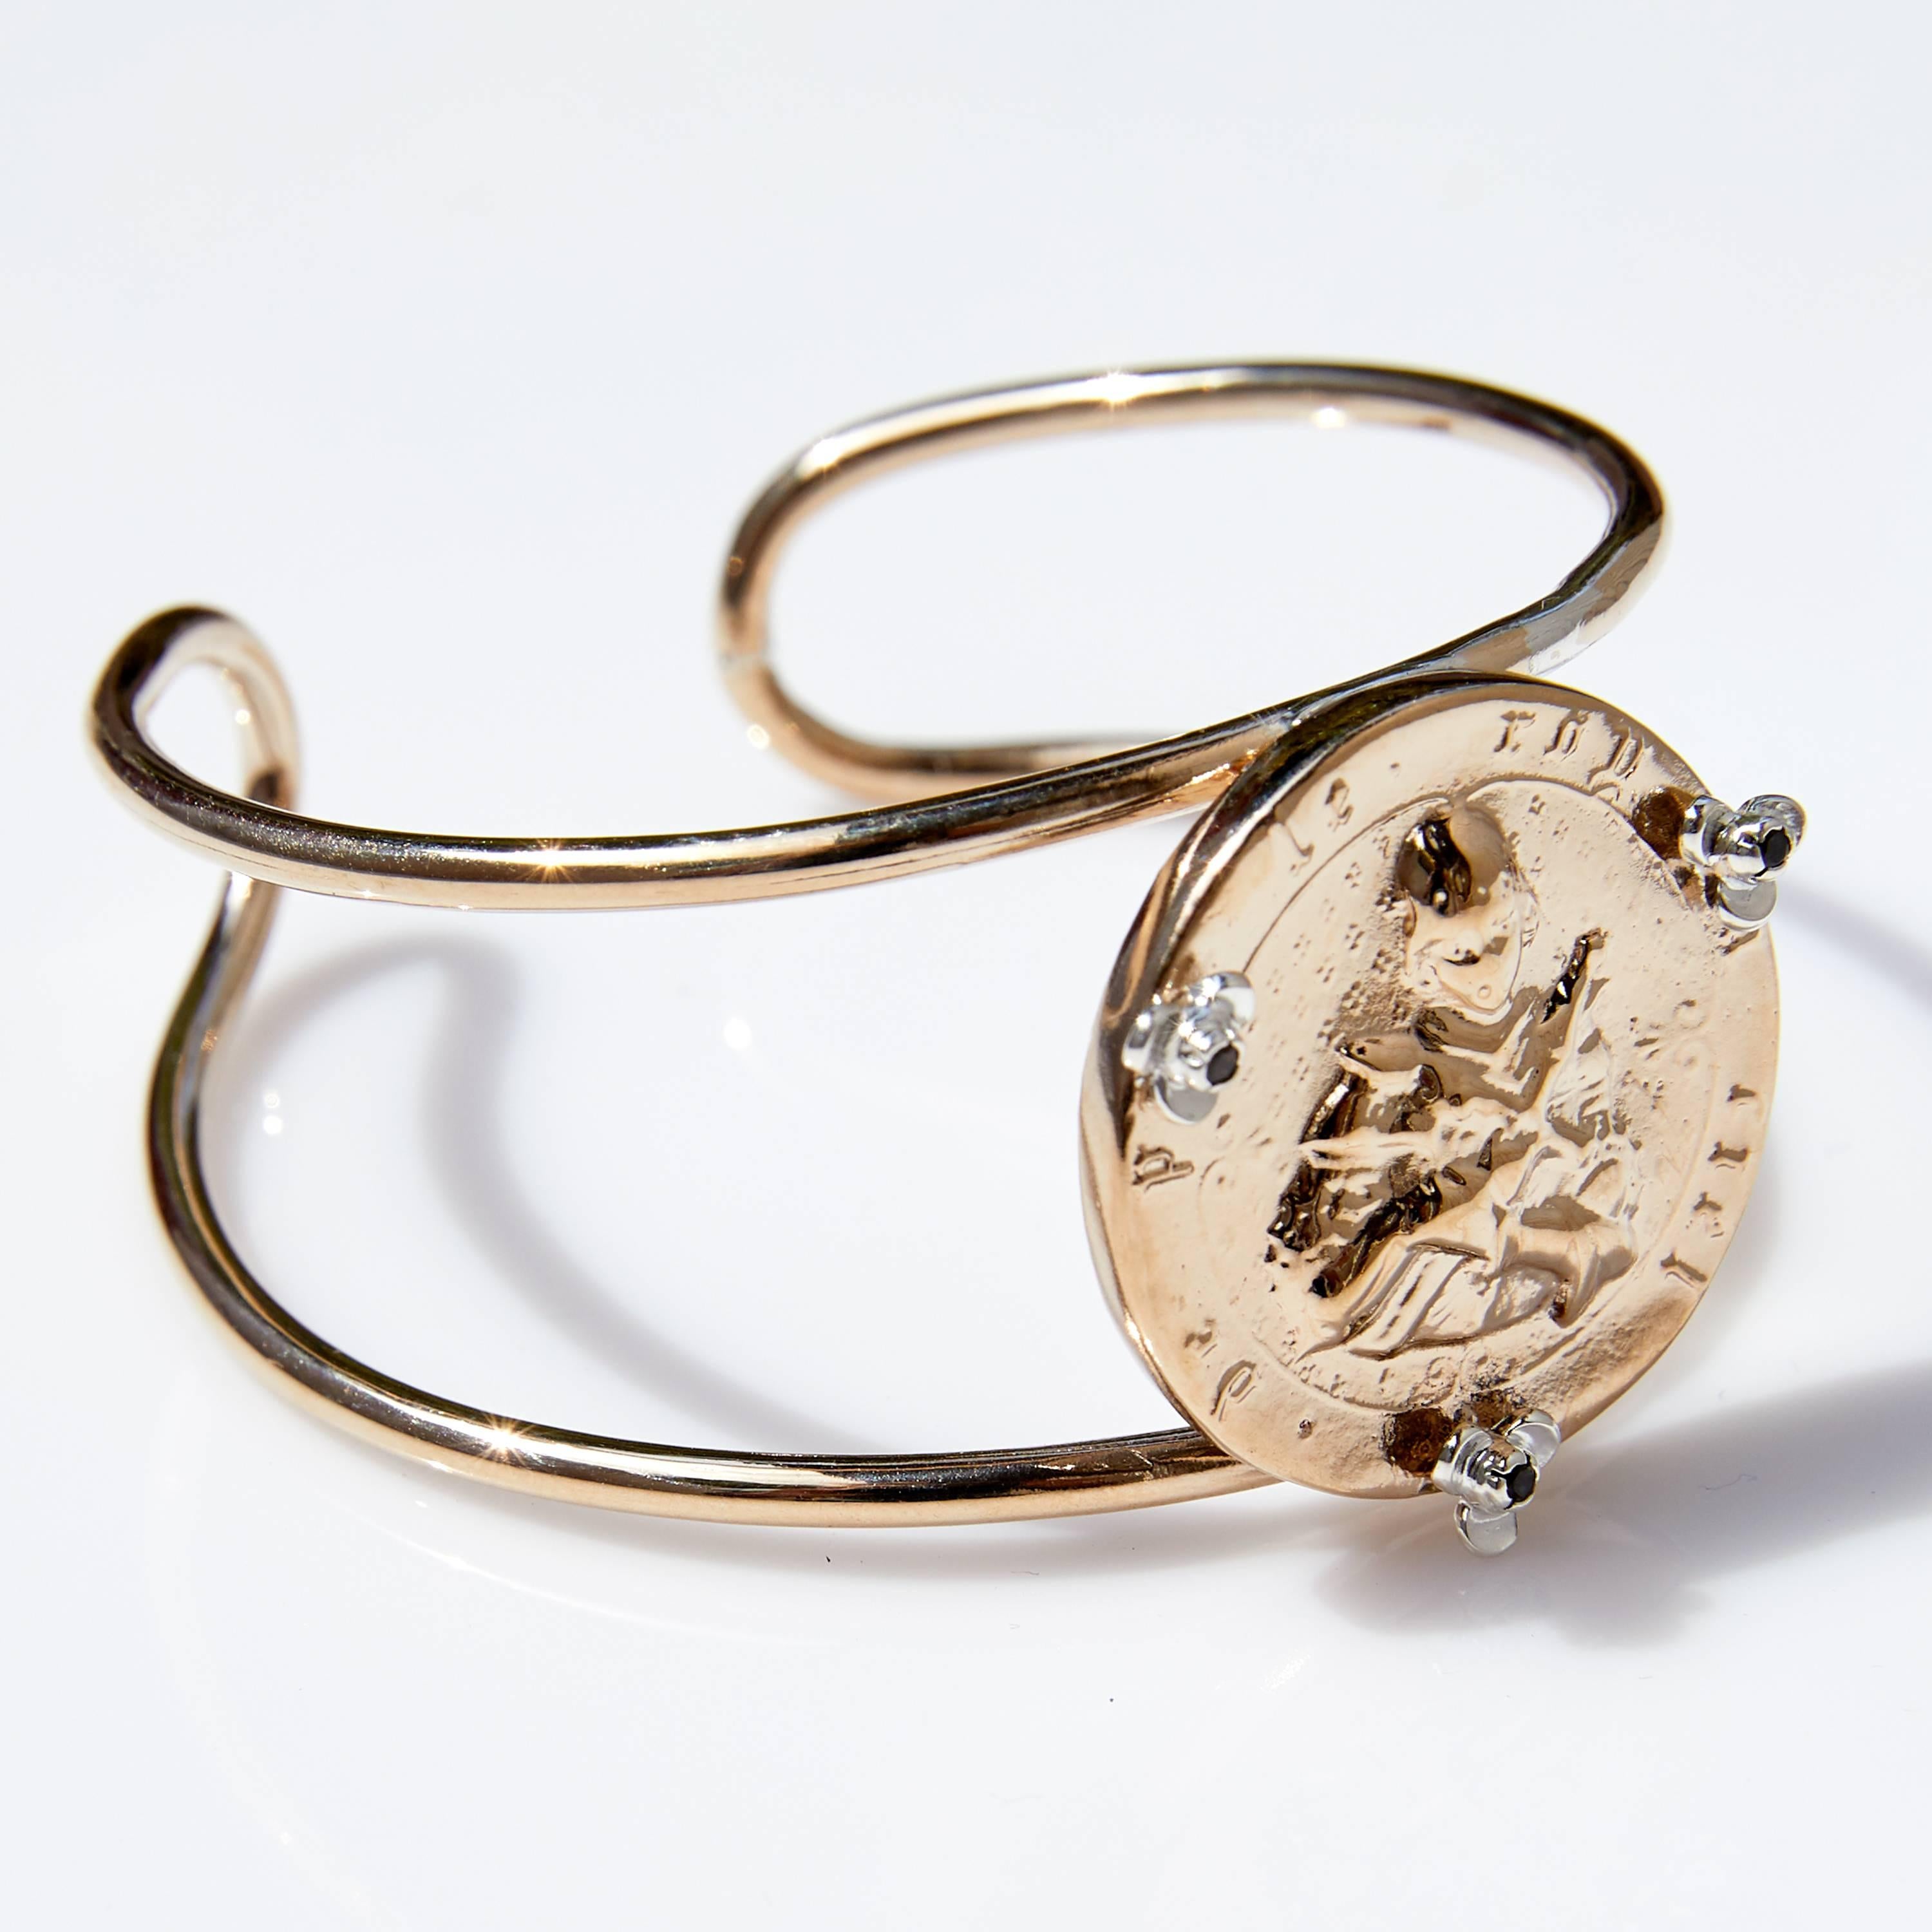 Bracelet Médaille Jeanne d'Arc Spirituel avec Diamant blanc serti dans des Roses dans des griffes en Argent sur une pièce en Bronze
J DAUPHIN

J DAUPHIN 